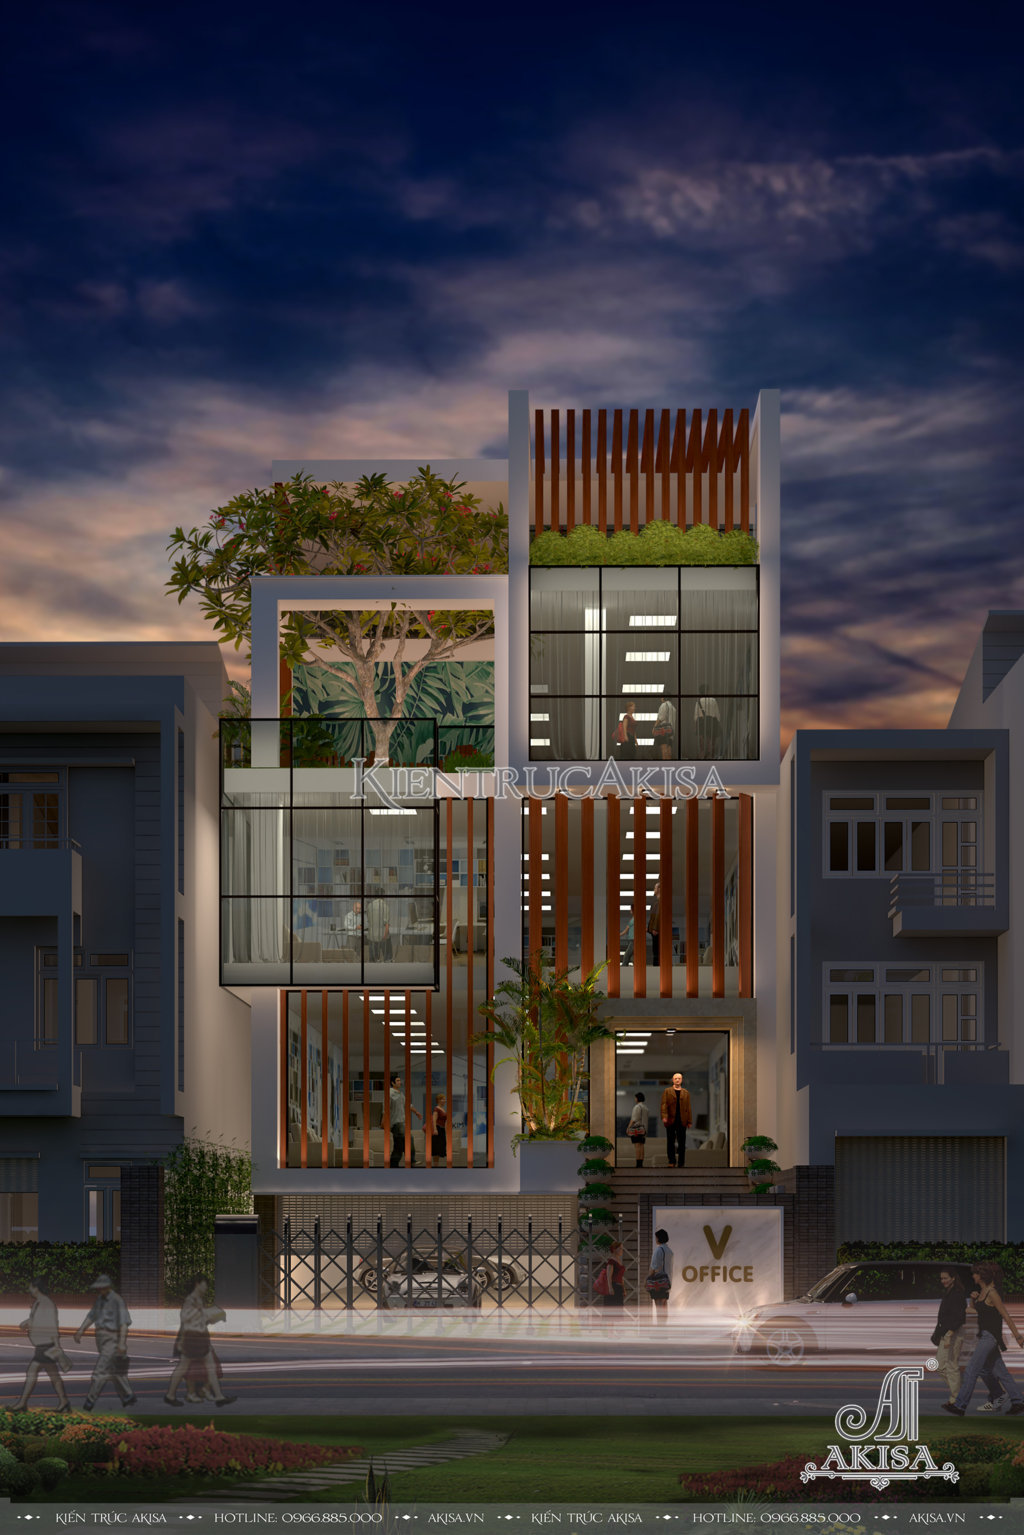 Thiết kế trụ sở văn phòng hiện đại 5 tầng (CĐT: bà Trang - Bình Định) VP51232